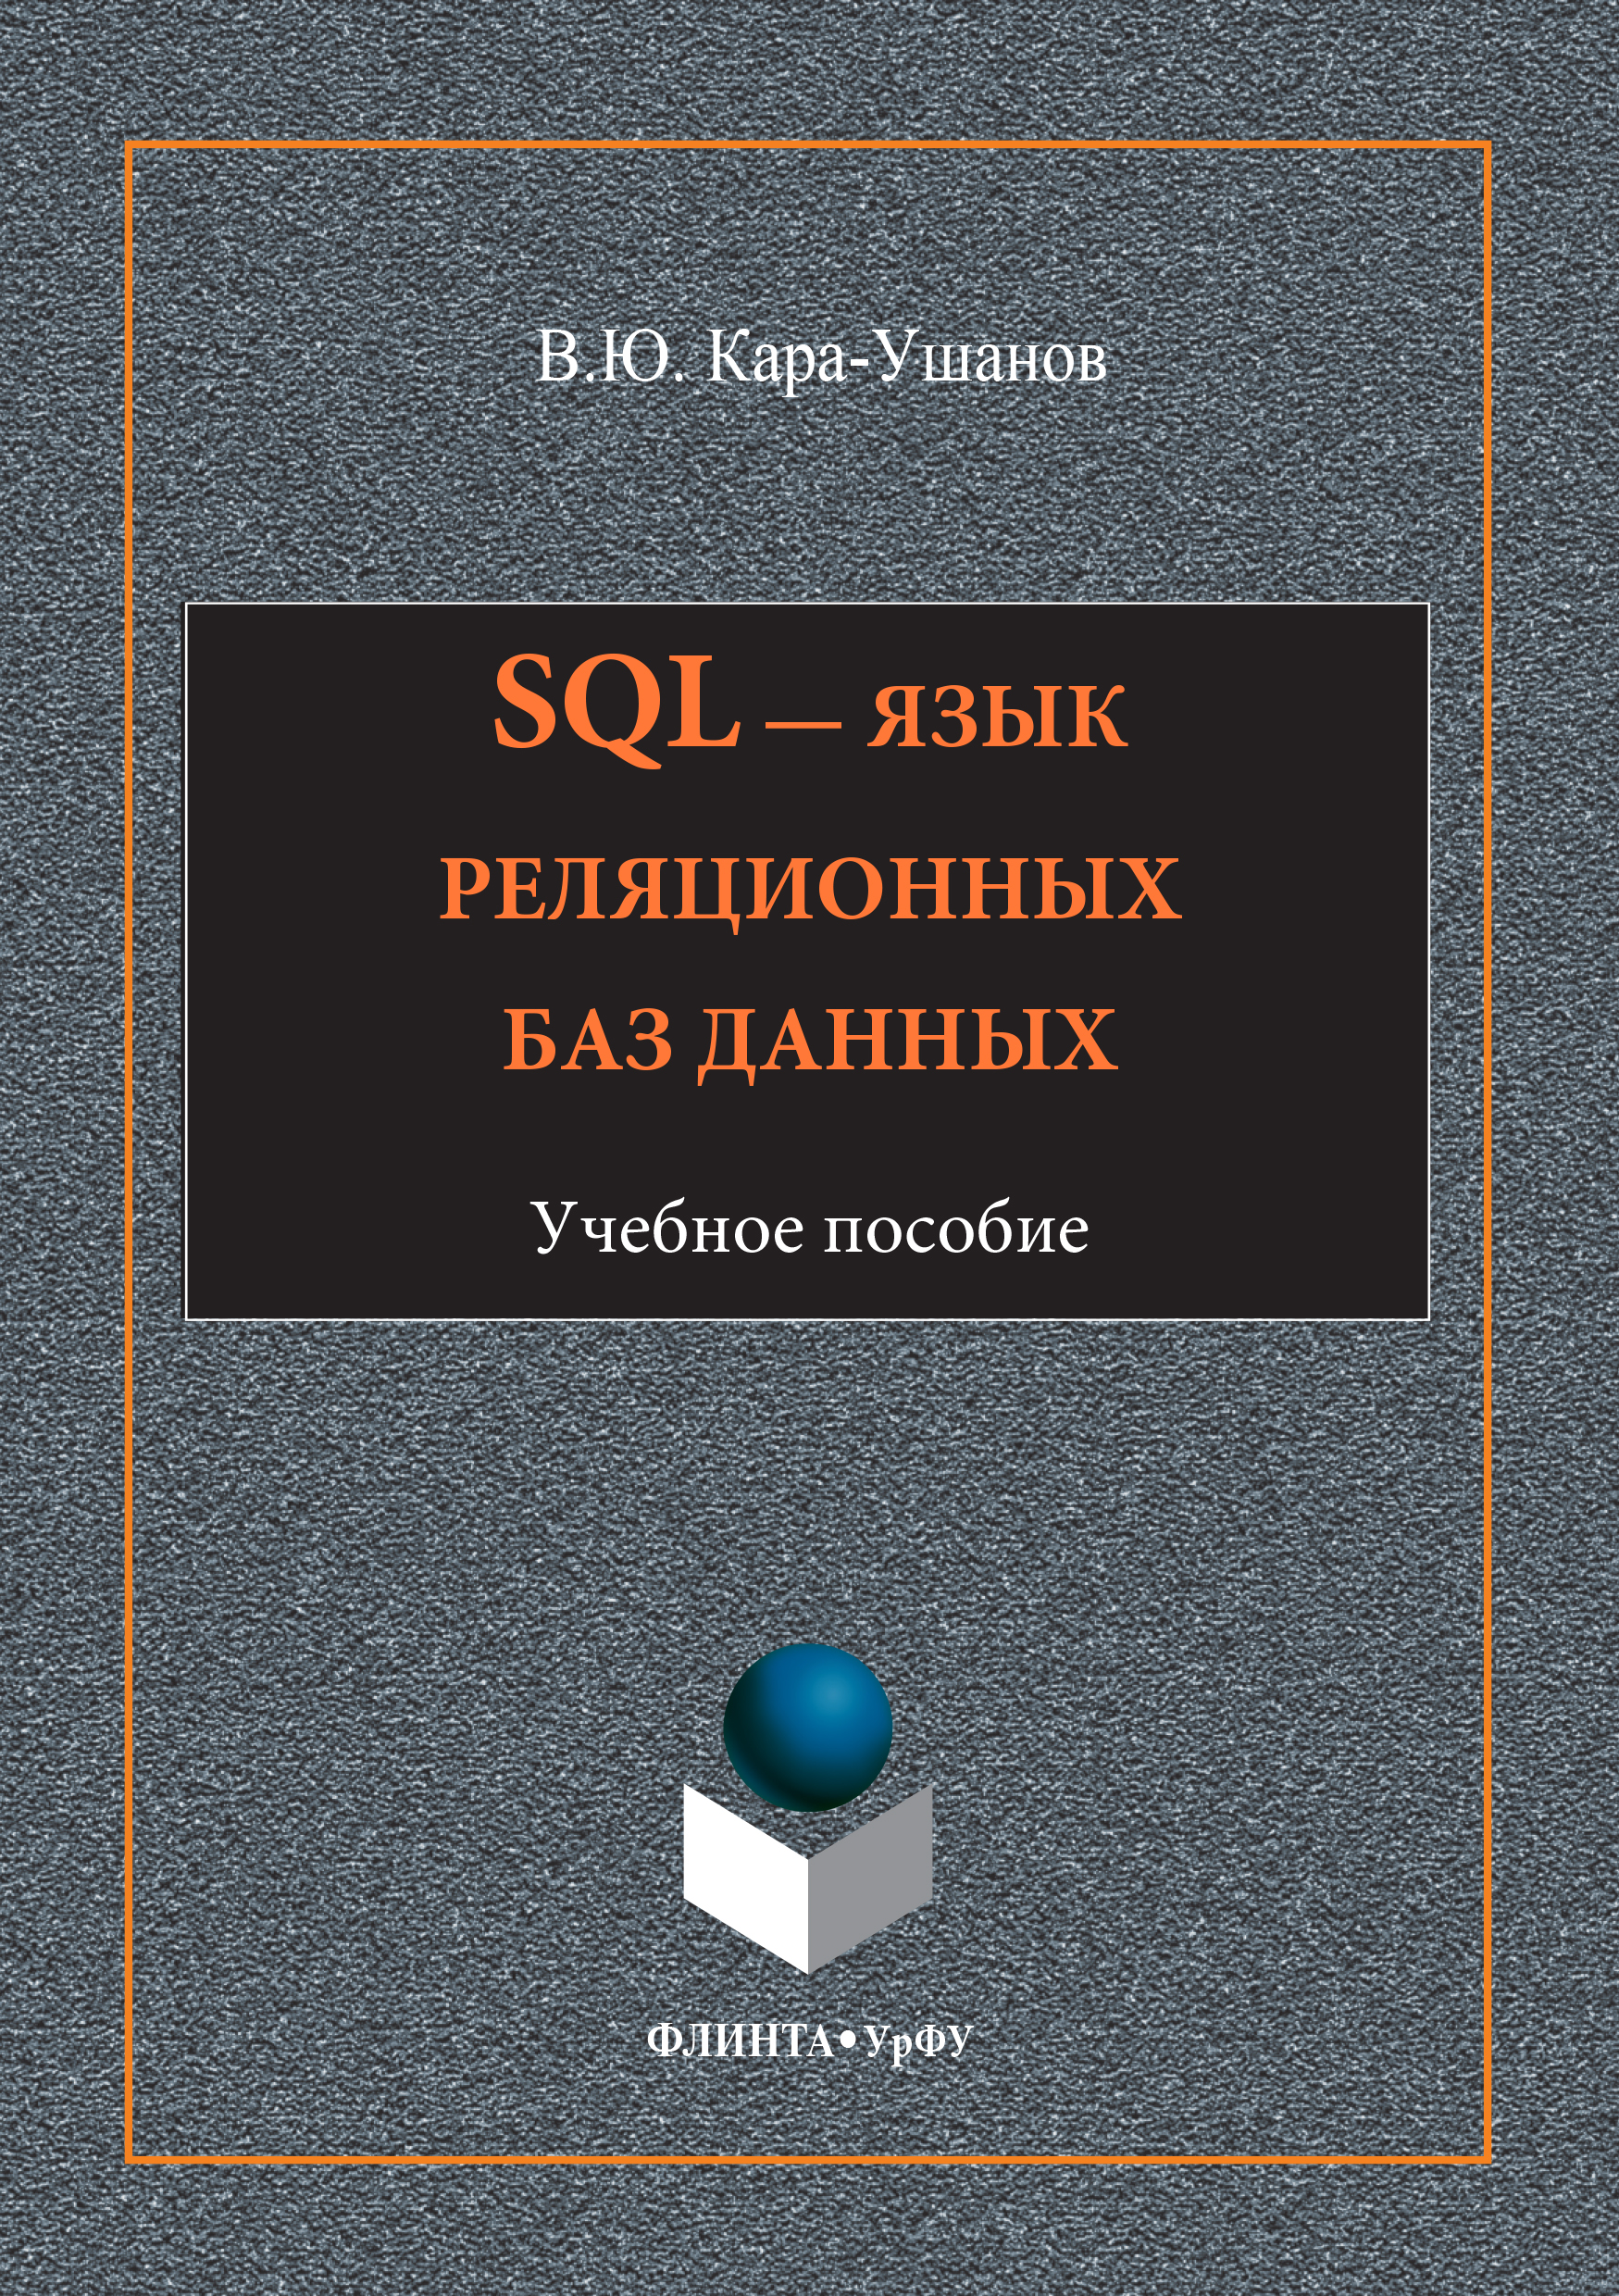 Книга  SQL – язык реляционных баз данных созданная Владимир Кара-Ушанов может относится к жанру базы данных, учебники и пособия для вузов. Стоимость электронной книги SQL – язык реляционных баз данных с идентификатором 24183256 составляет 130.00 руб.